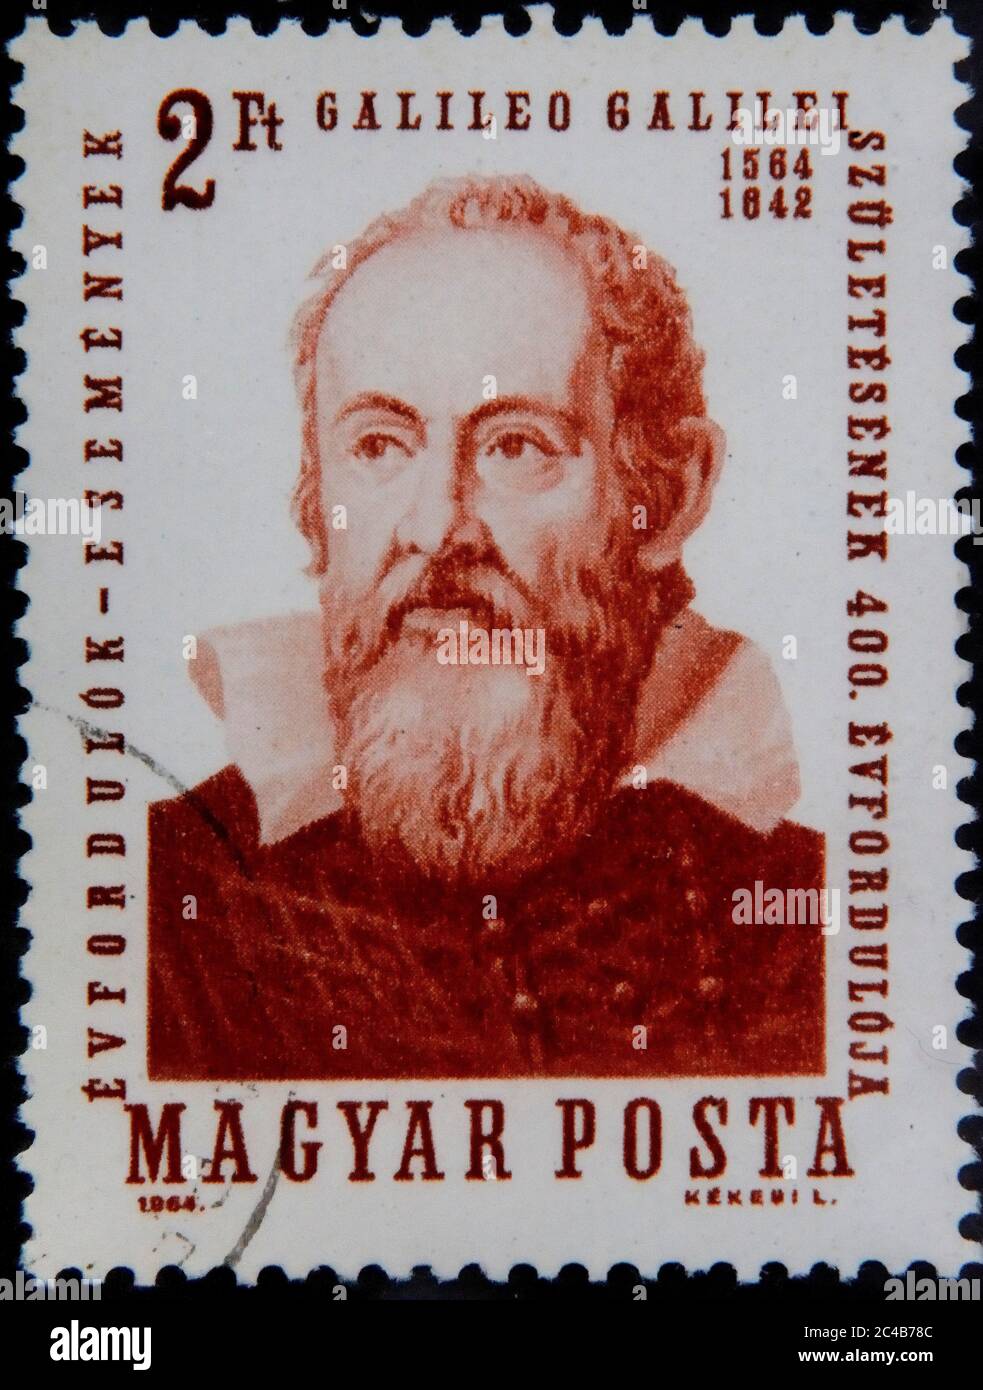 Galileo Galilei, 1564-1642, italienischer Astronom, Mathematiker, Physiker, Philosoph und Professor, Porträt auf ungarischer Briefmarke, Ungarn Stockfoto